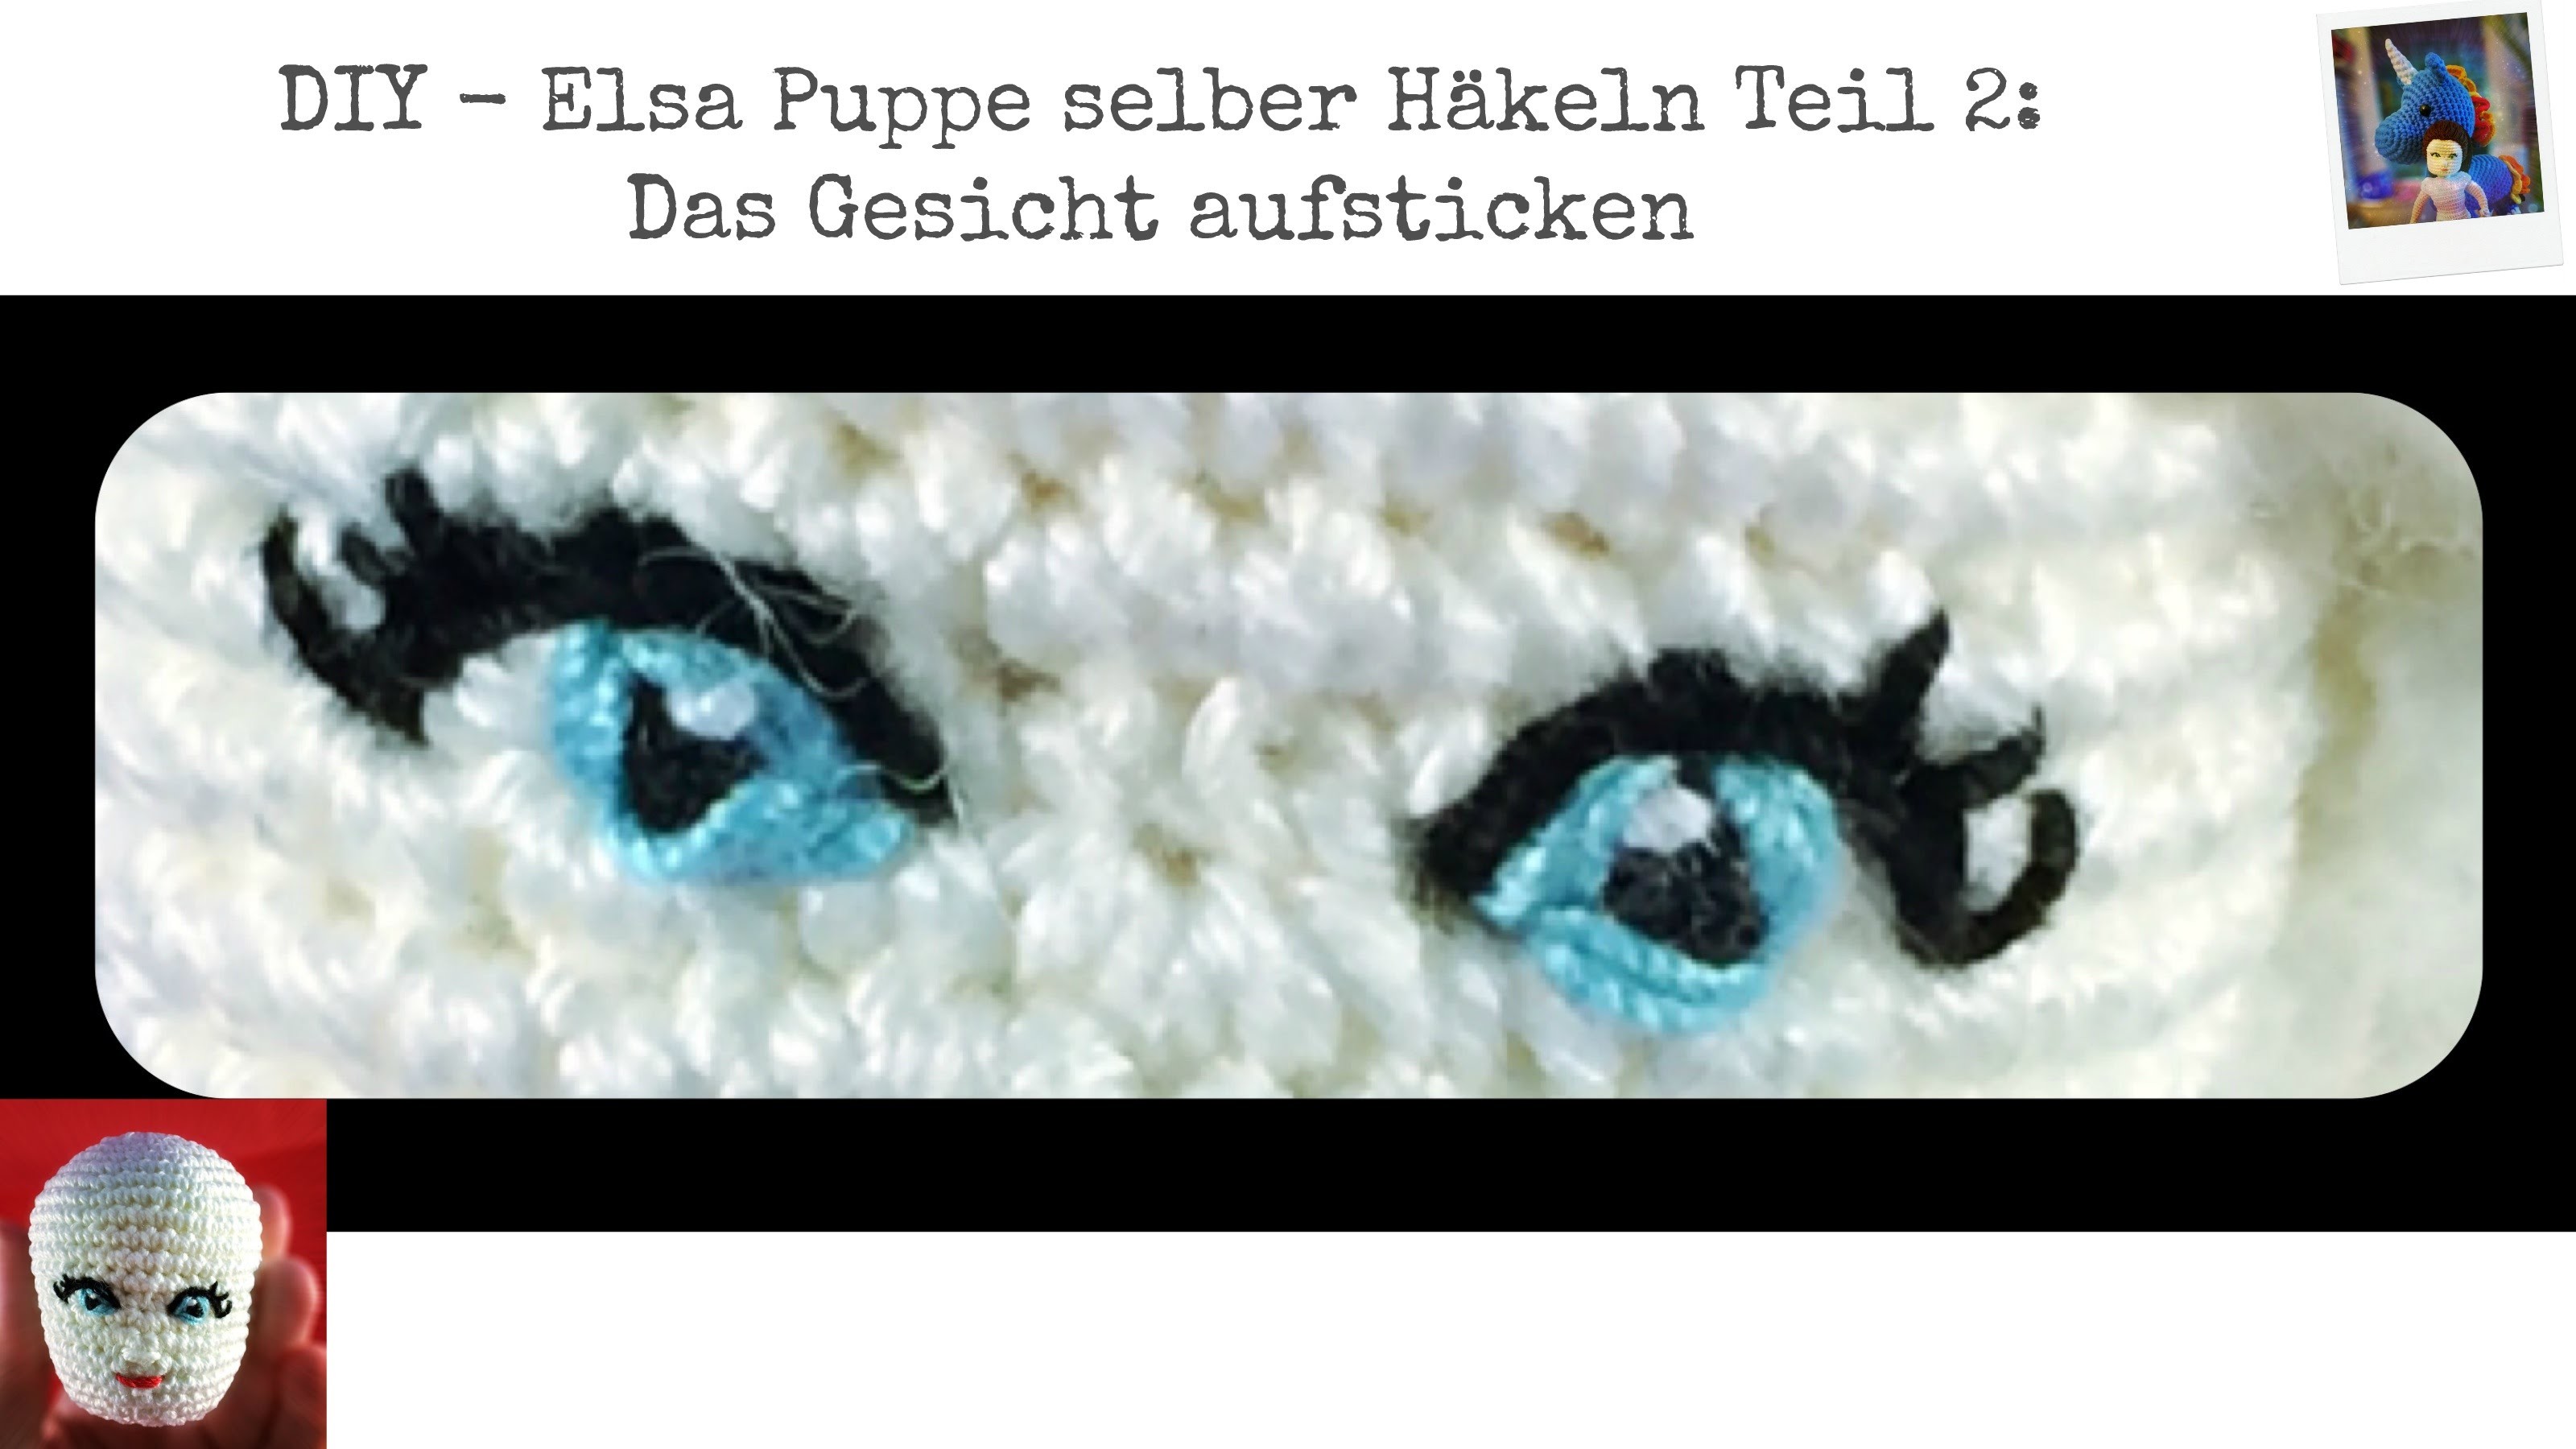 DIY - Elsa Puppe selber häkeln Teil 2: Augen und Gesicht für Häkelpuppen aufsticken